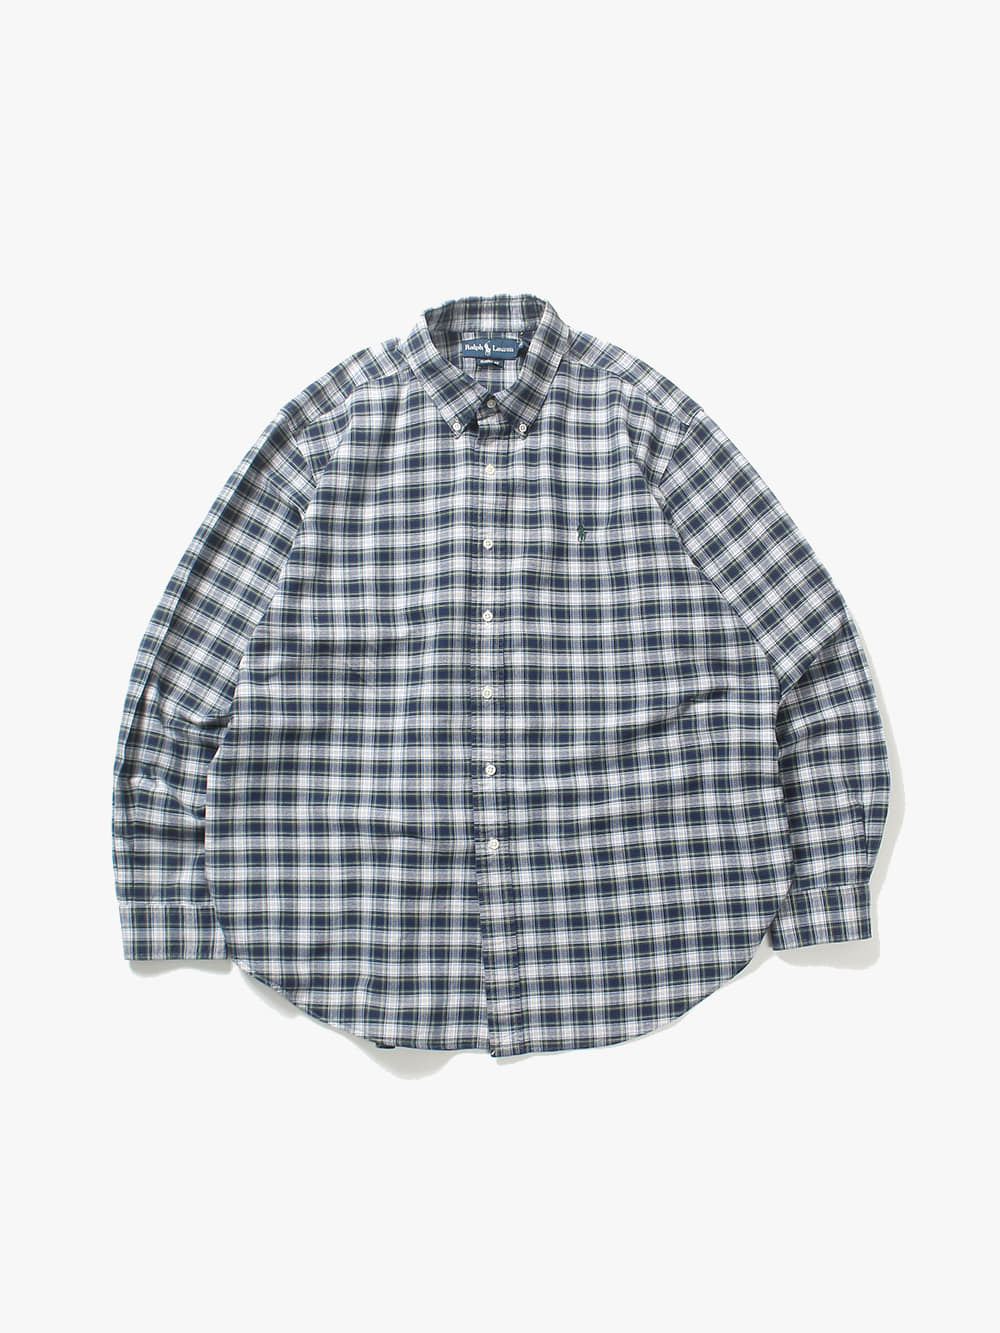 [ 105 ] Polo Ralph Lauren Shirt (6469)